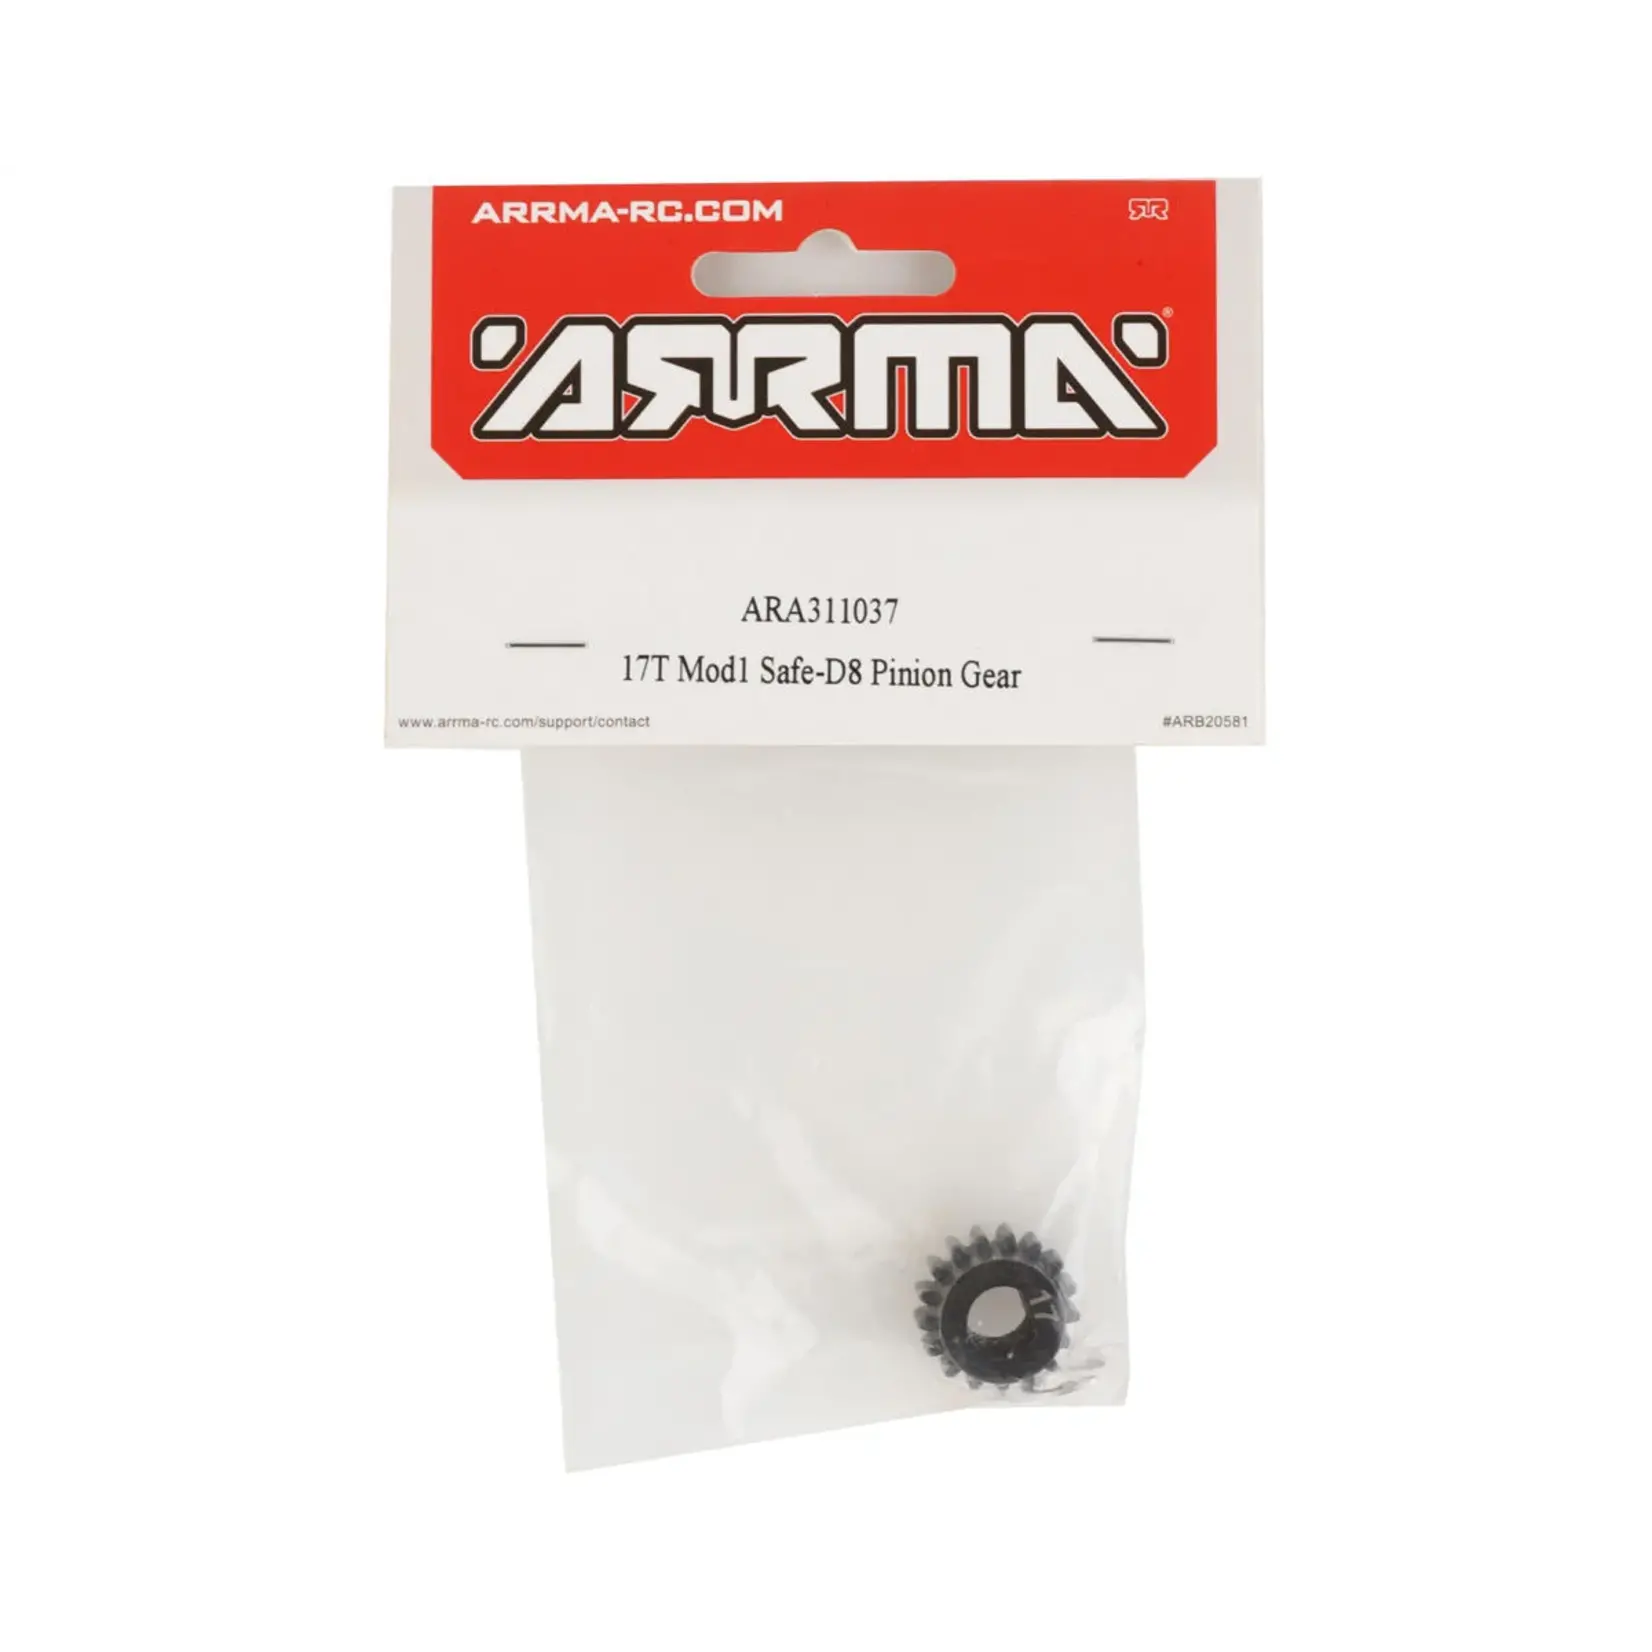 ARRMA Arrma Safe-D8 Mod1 Pinion Gear (17T) #ARA311037